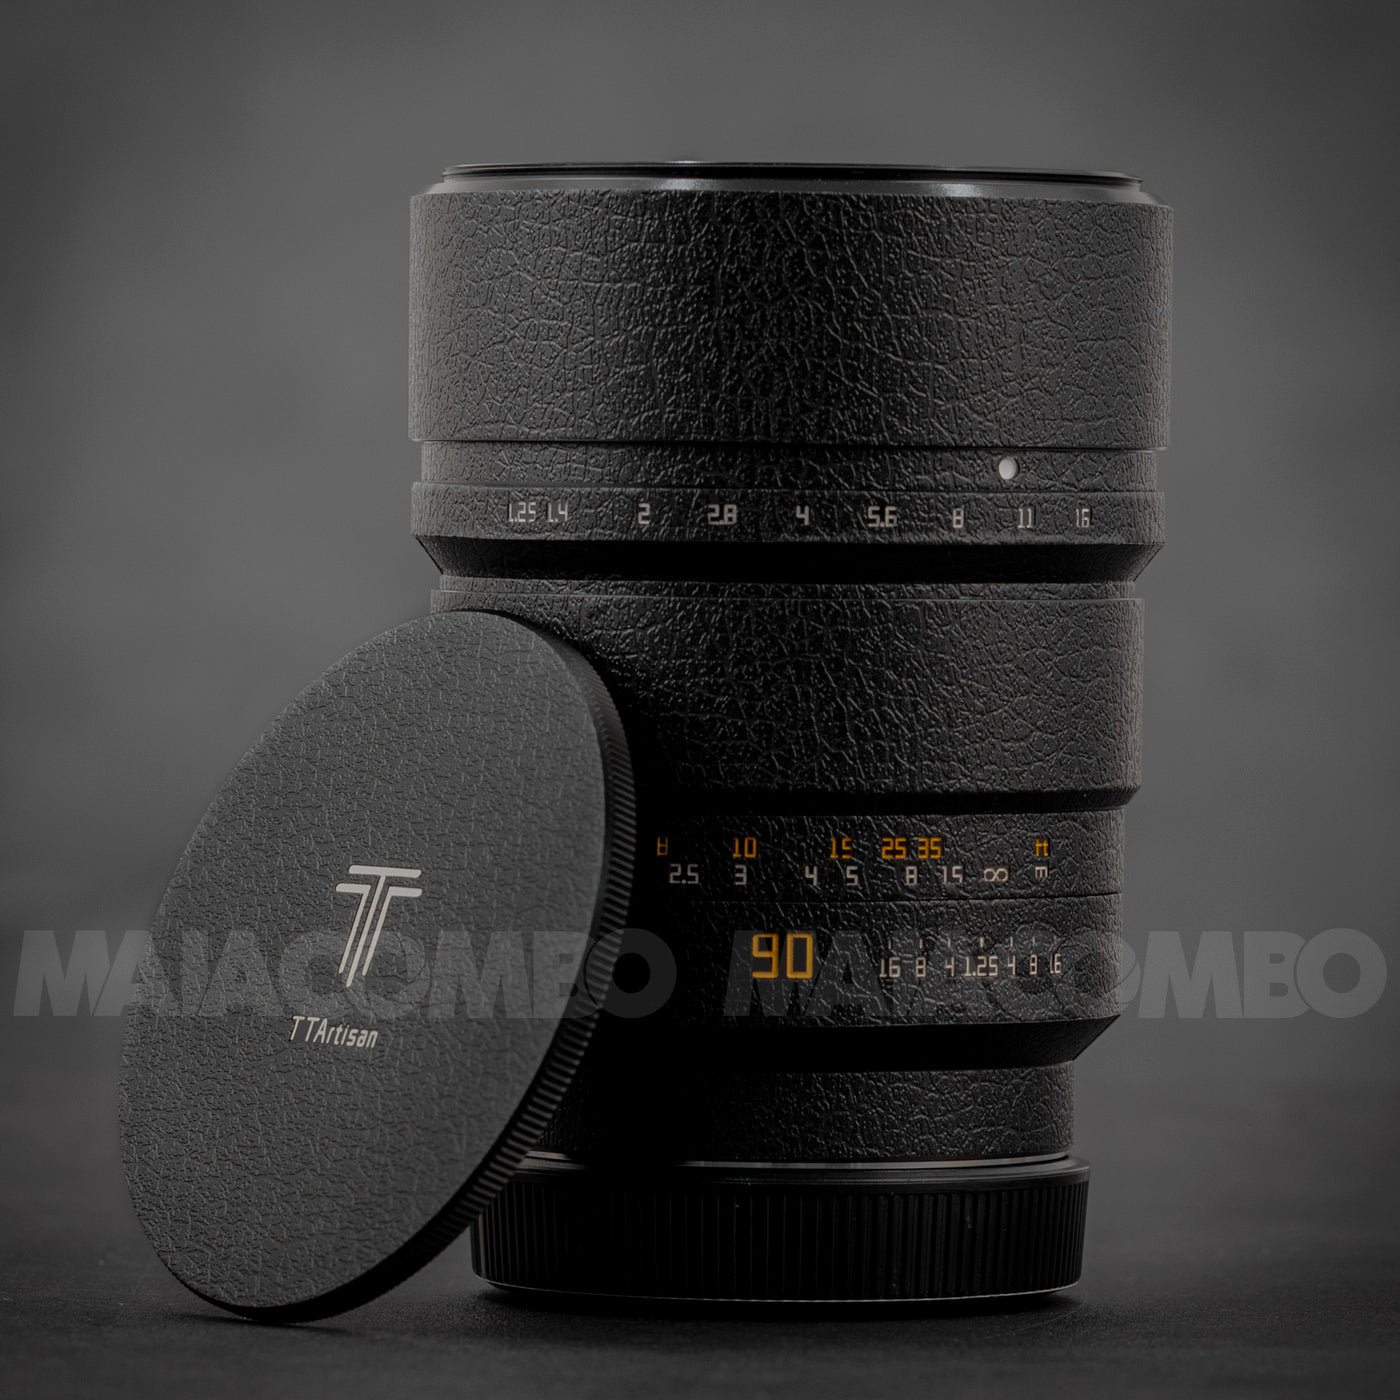 TTArtisan 90mm f/1.25 Lens Skin/ Wrap